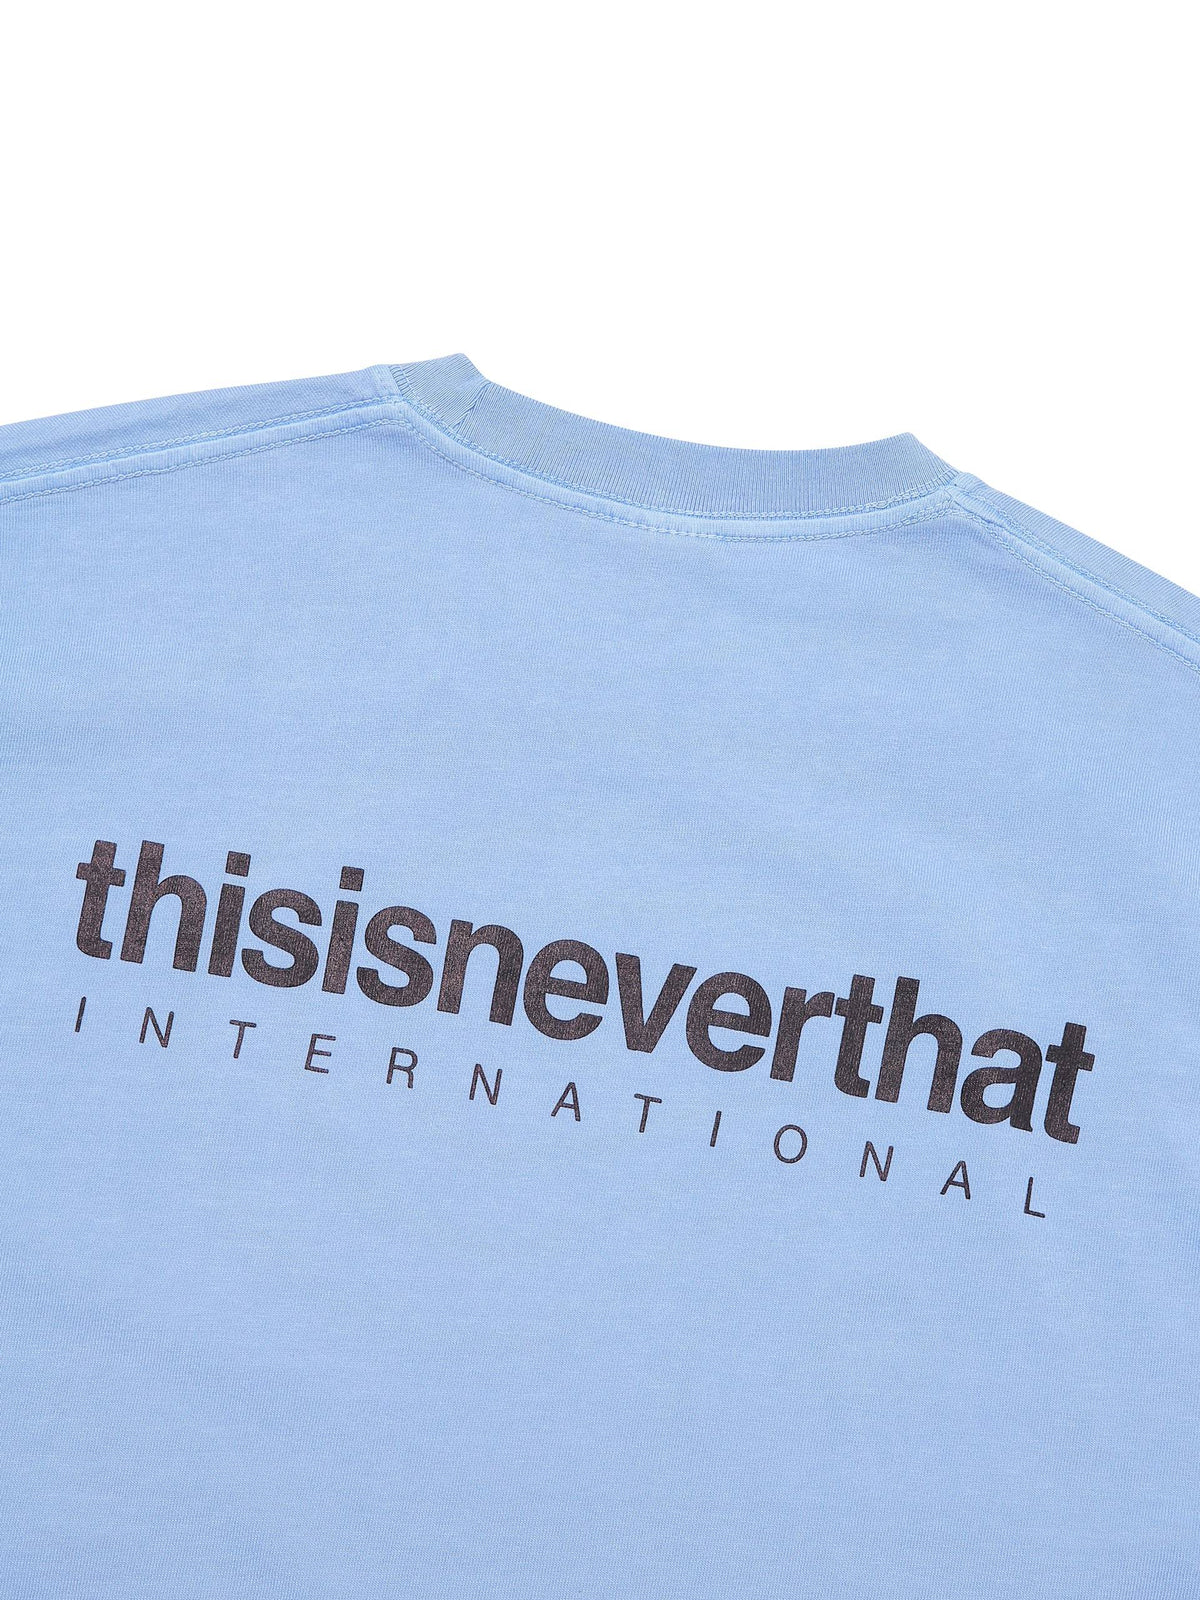 INTL. Logo Tee T-Shirt 